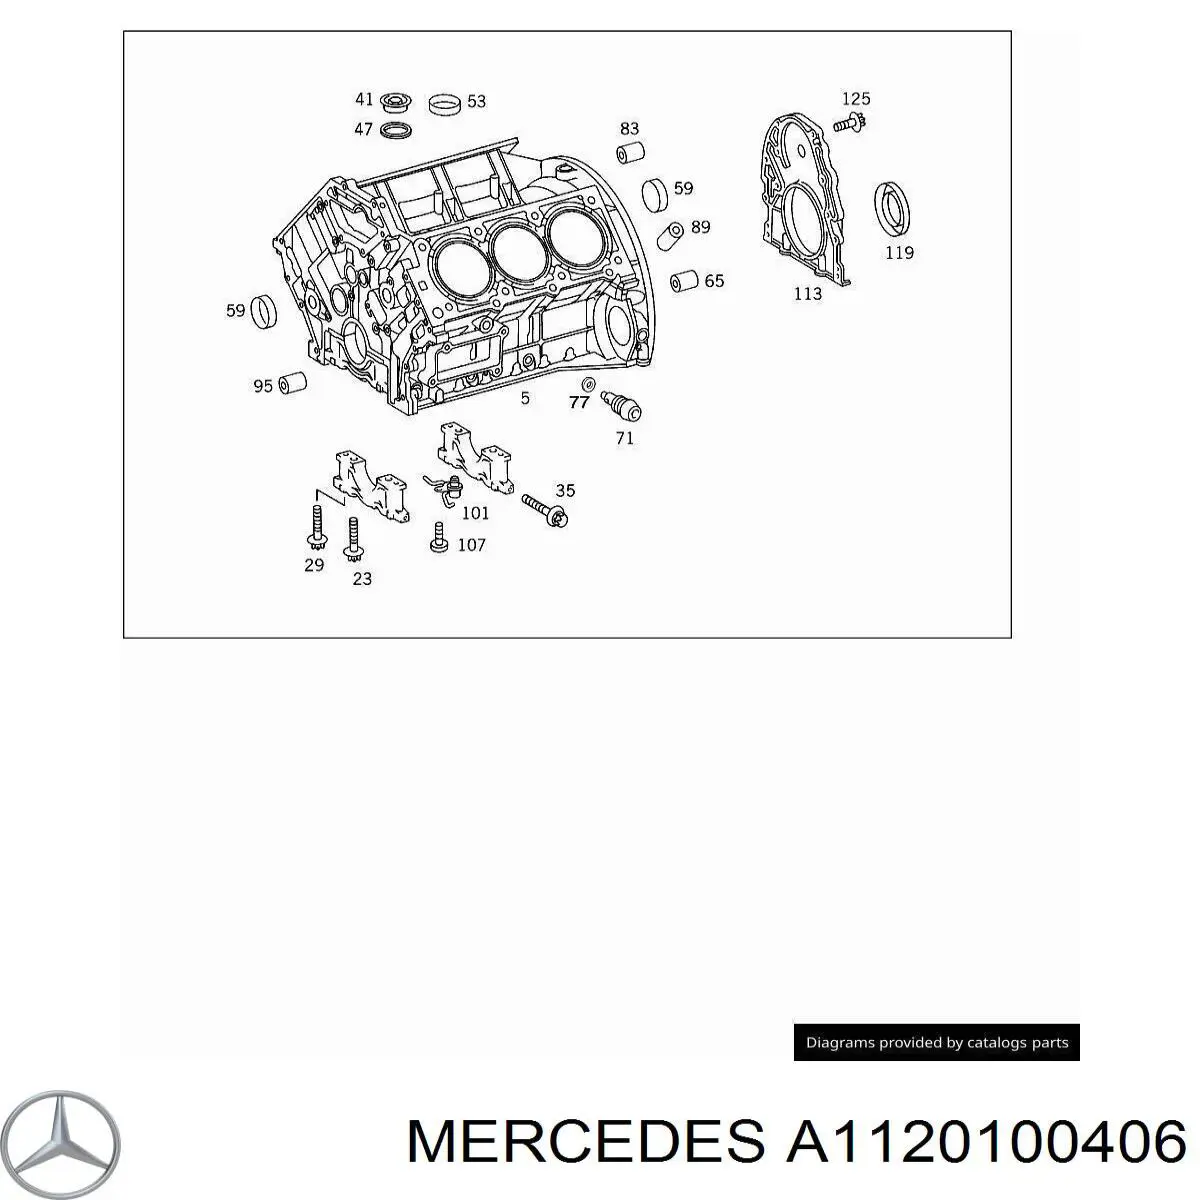 A1120100406 Mercedes блок цилиндров двигателя